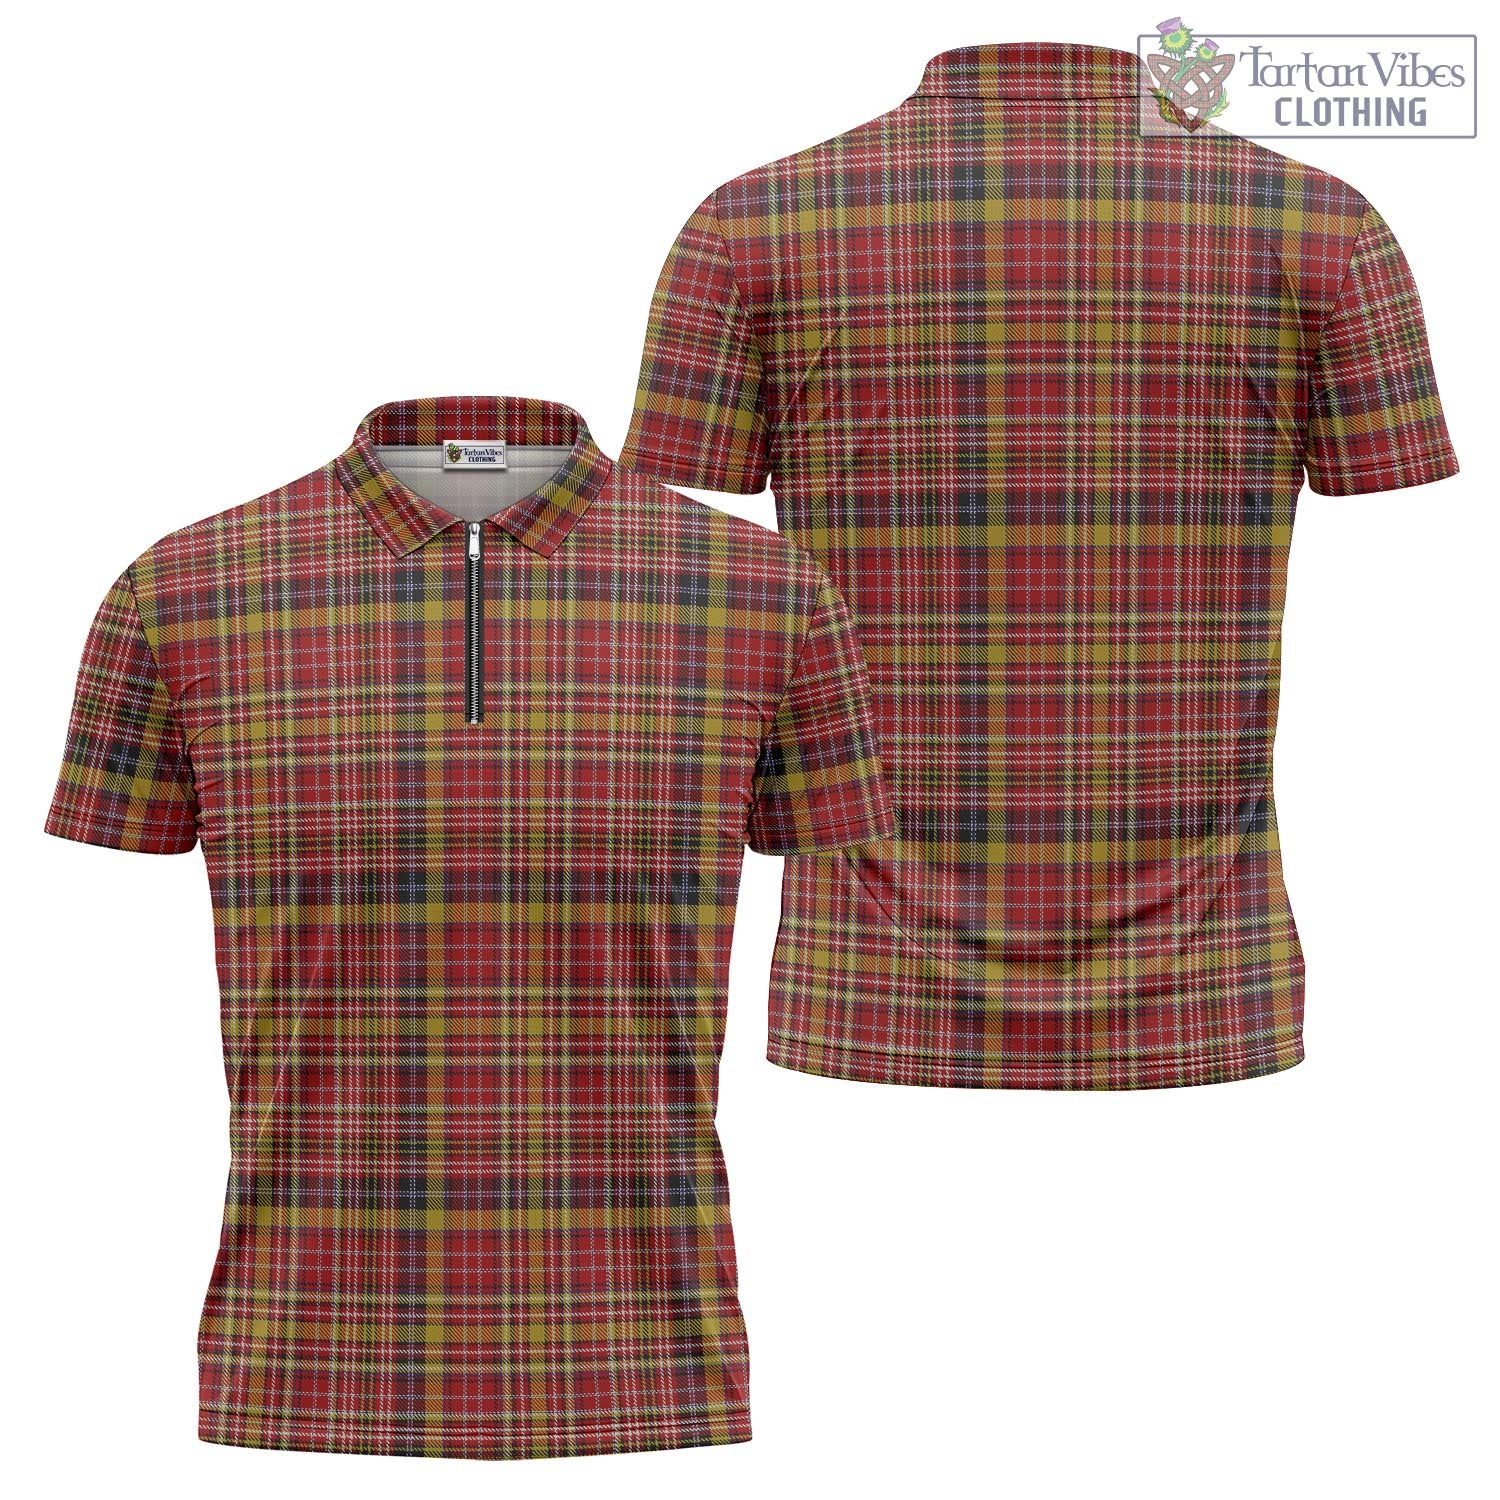 Tartan Vibes Clothing Ogilvie (Ogilvy) of Strathallan Tartan Zipper Polo Shirt